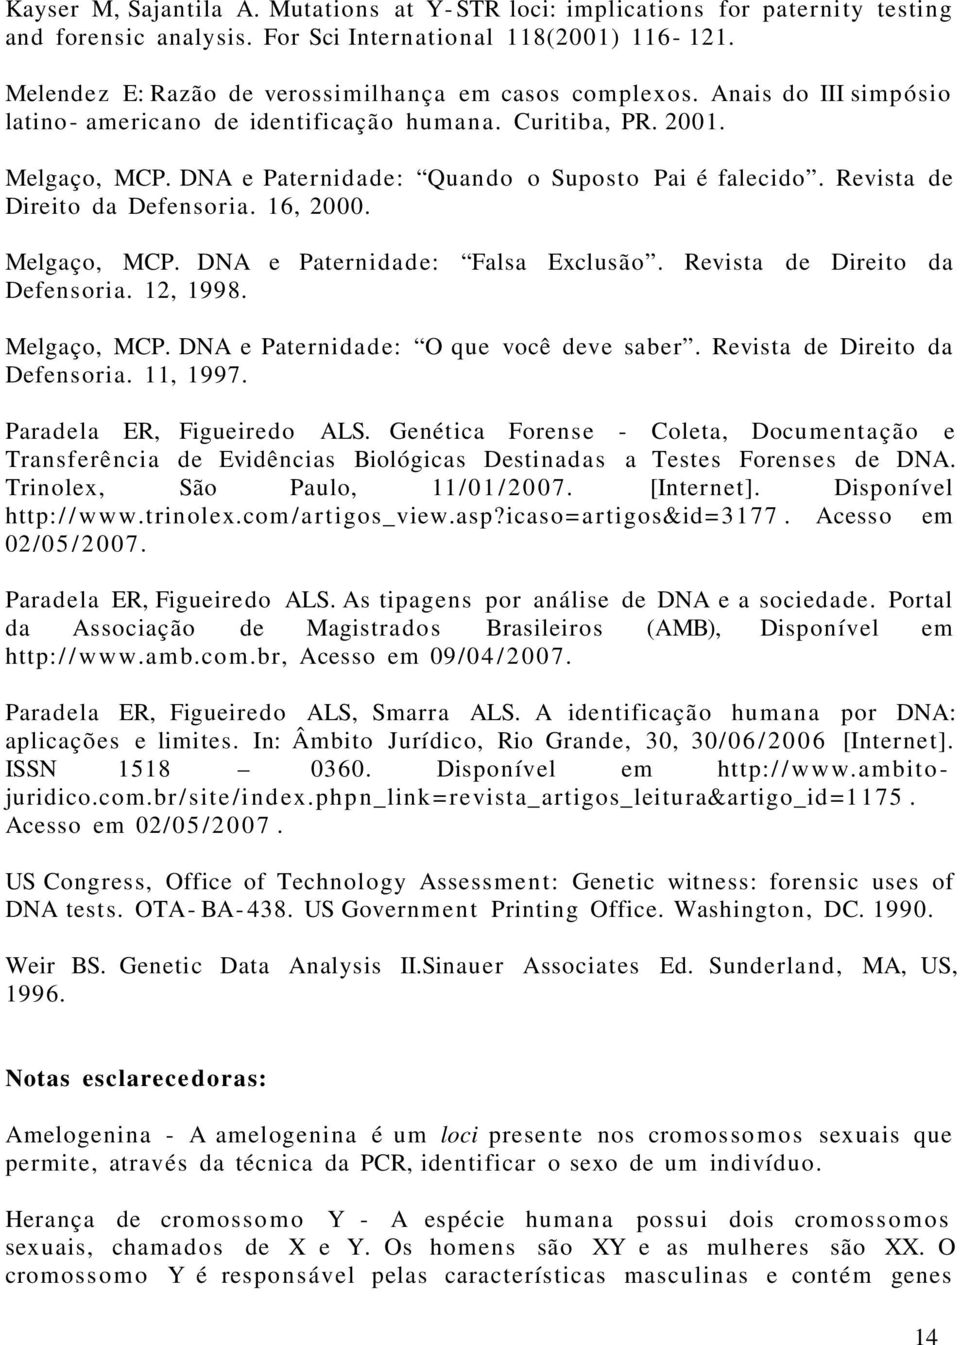 Melgaço, MCP. DNA e Paternidade: Falsa. Revista de Direito da Defensoria., 199. Melgaço, MCP. DNA e Paternidade: O que você deve saber. Revista de Direito da Defensoria., 1997.